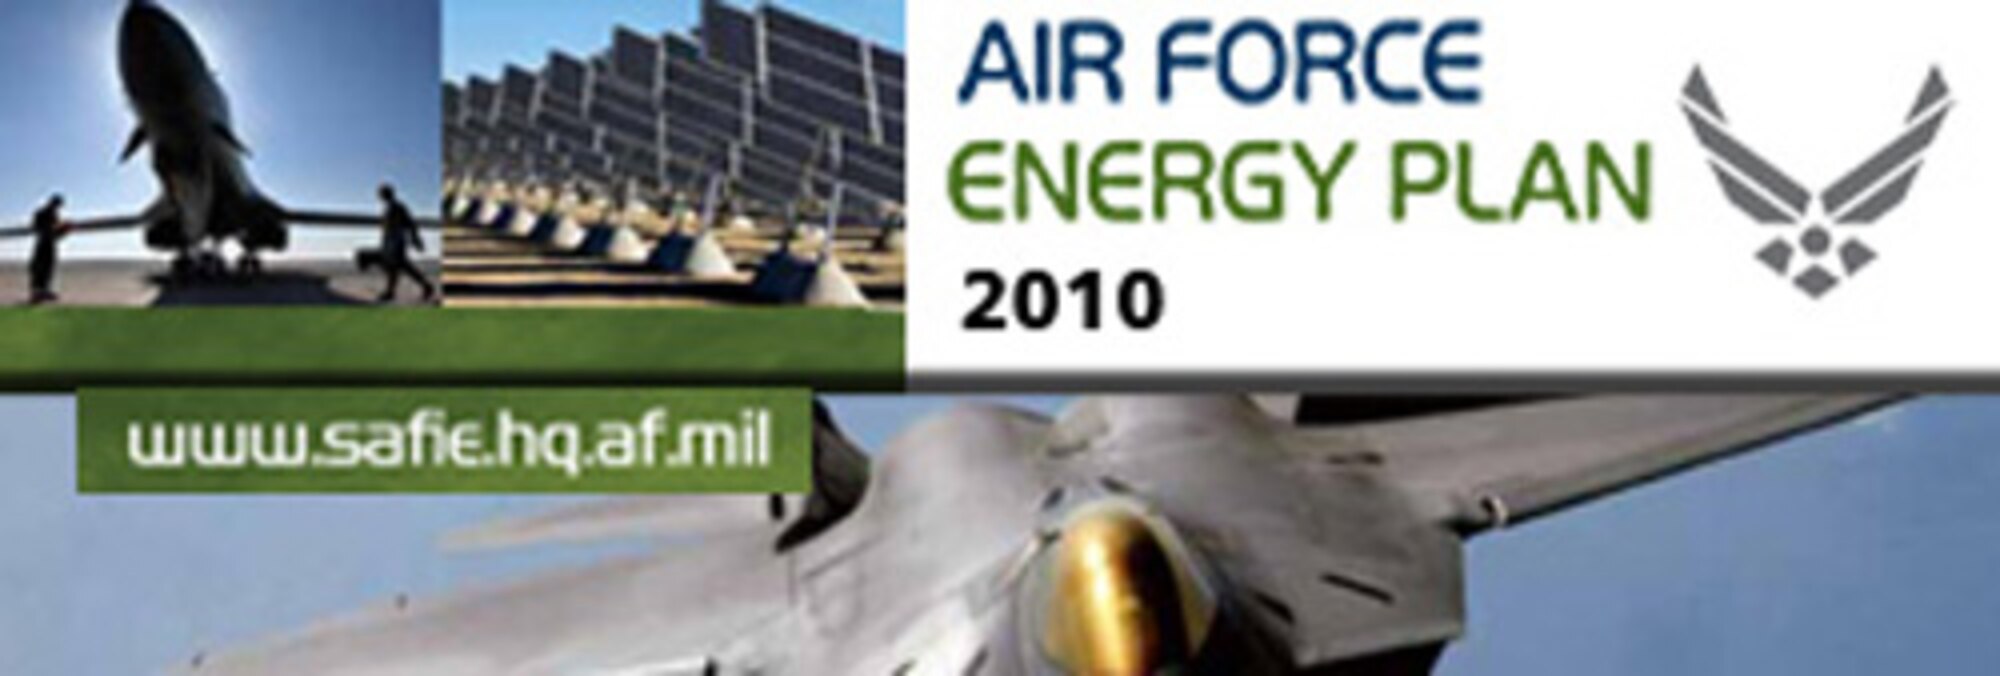 2010 Air Force Energy Plan